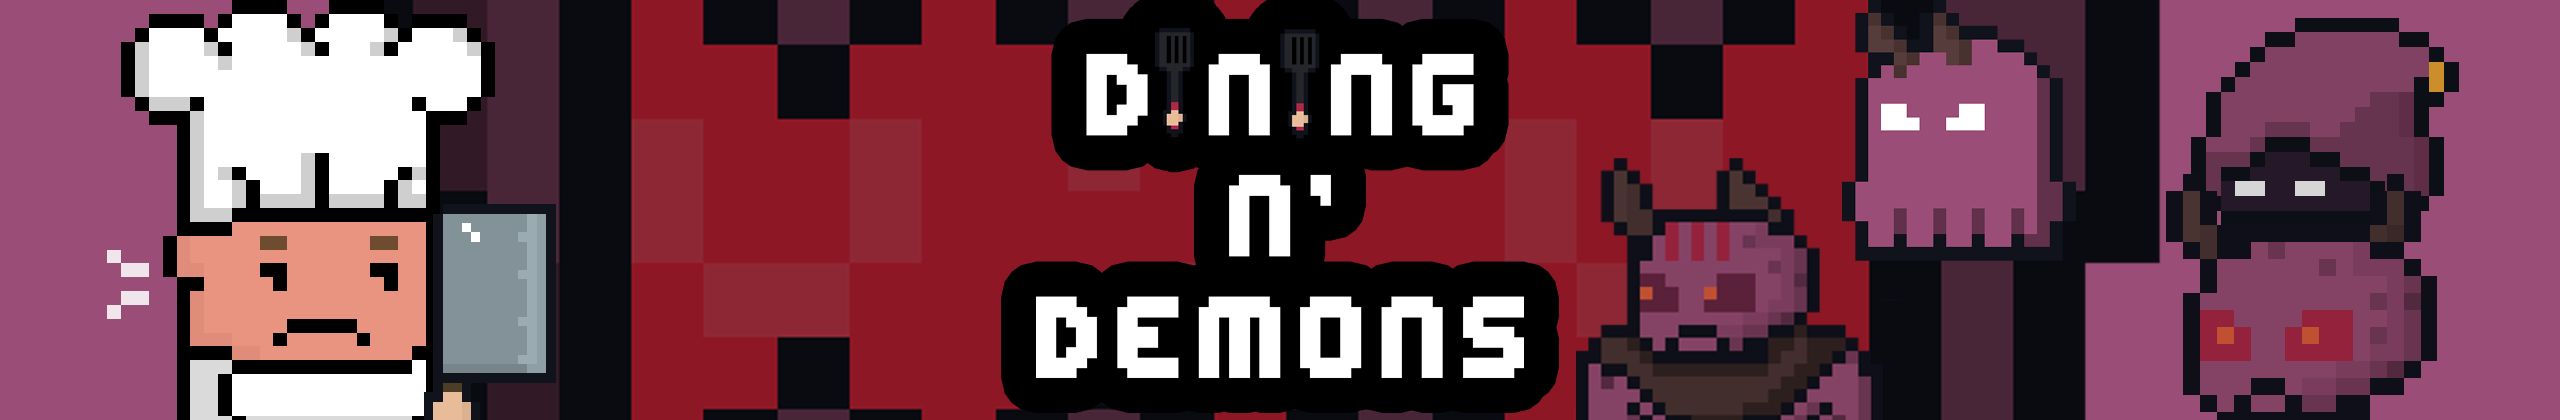 Dining N' Demons